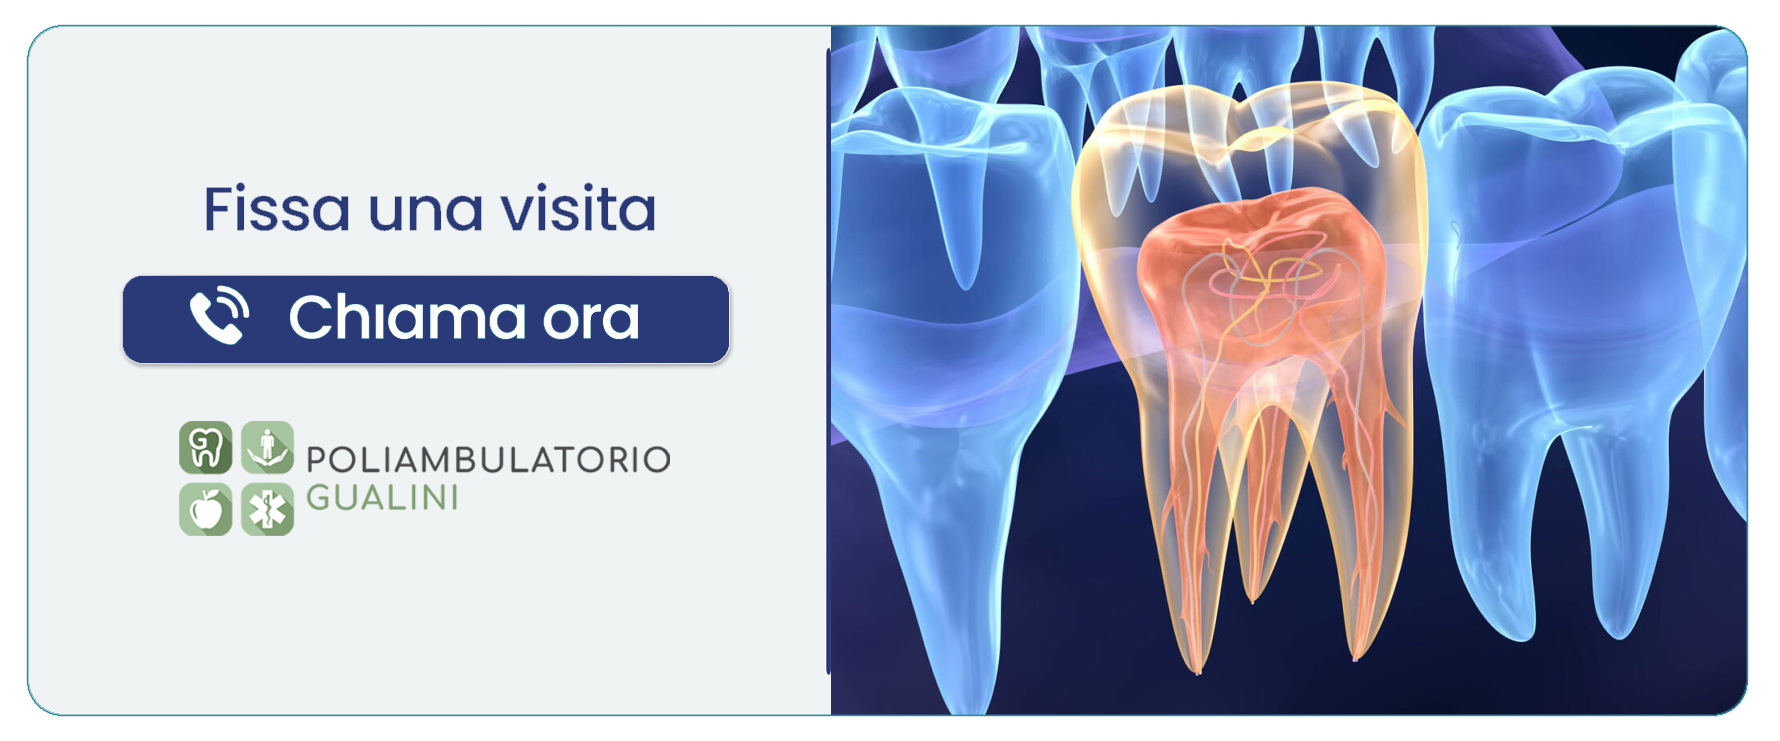 endodonzia-trattamento-endodontico Rogno (Bergamo)